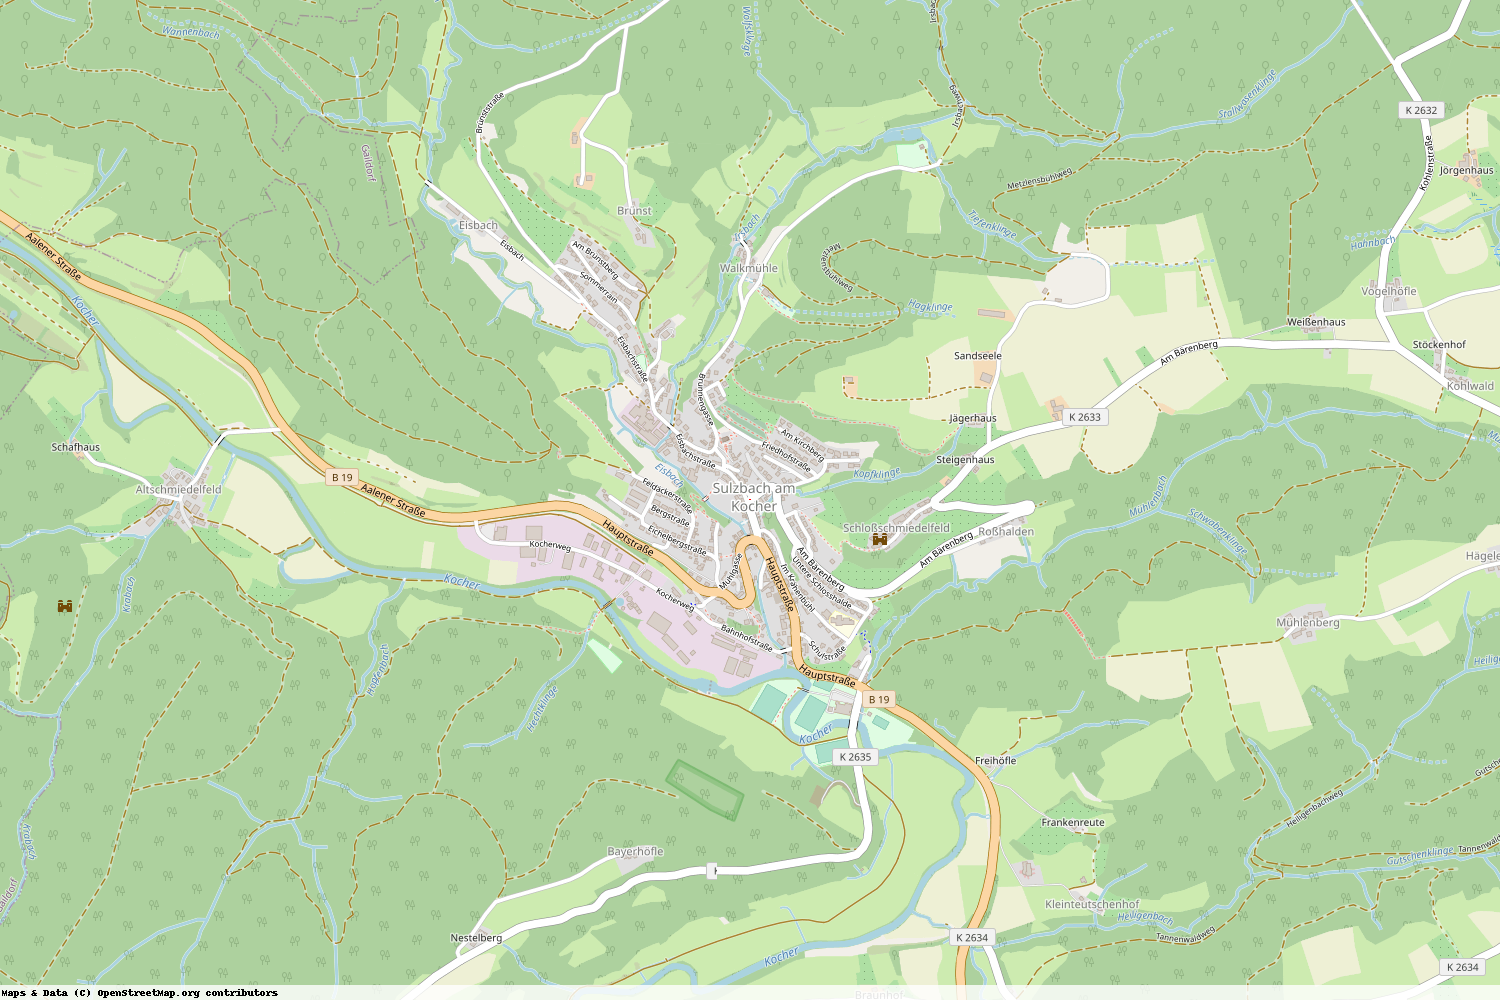 Ist gerade Stromausfall in Baden-Württemberg - Schwäbisch Hall - Sulzbach-Laufen?